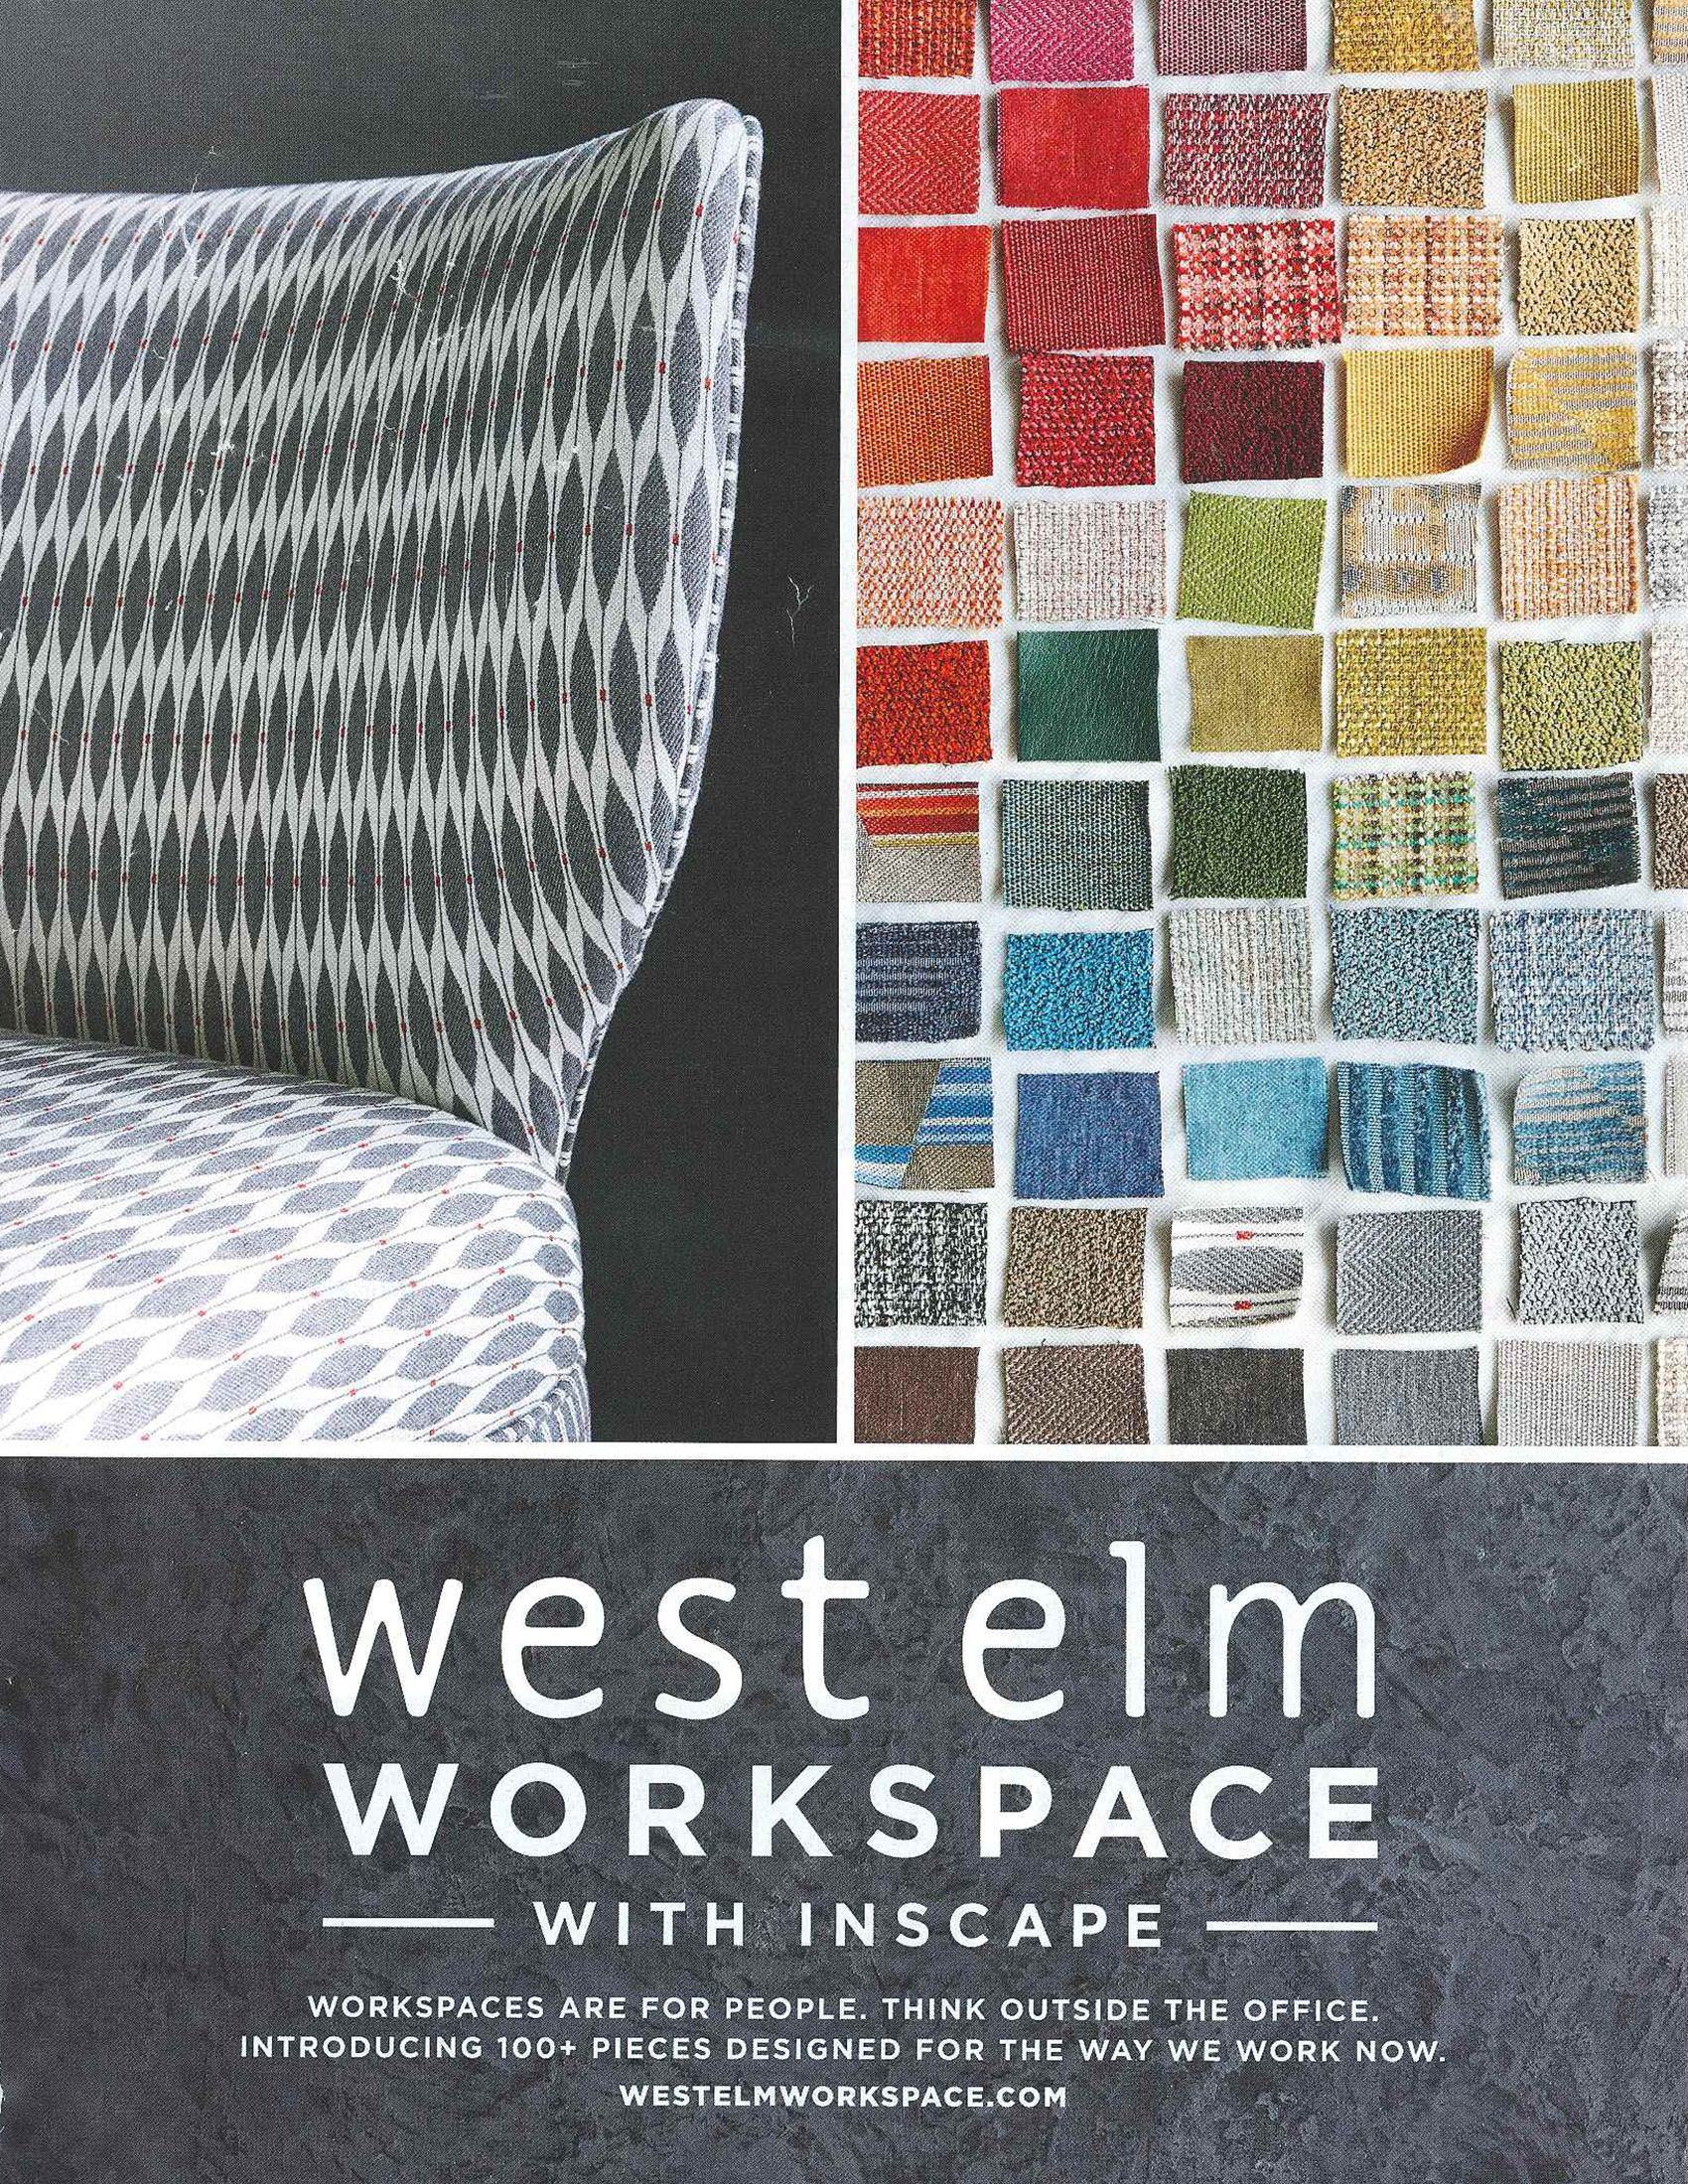 "Leaf Dot" by Designtex for West Elm Workspace